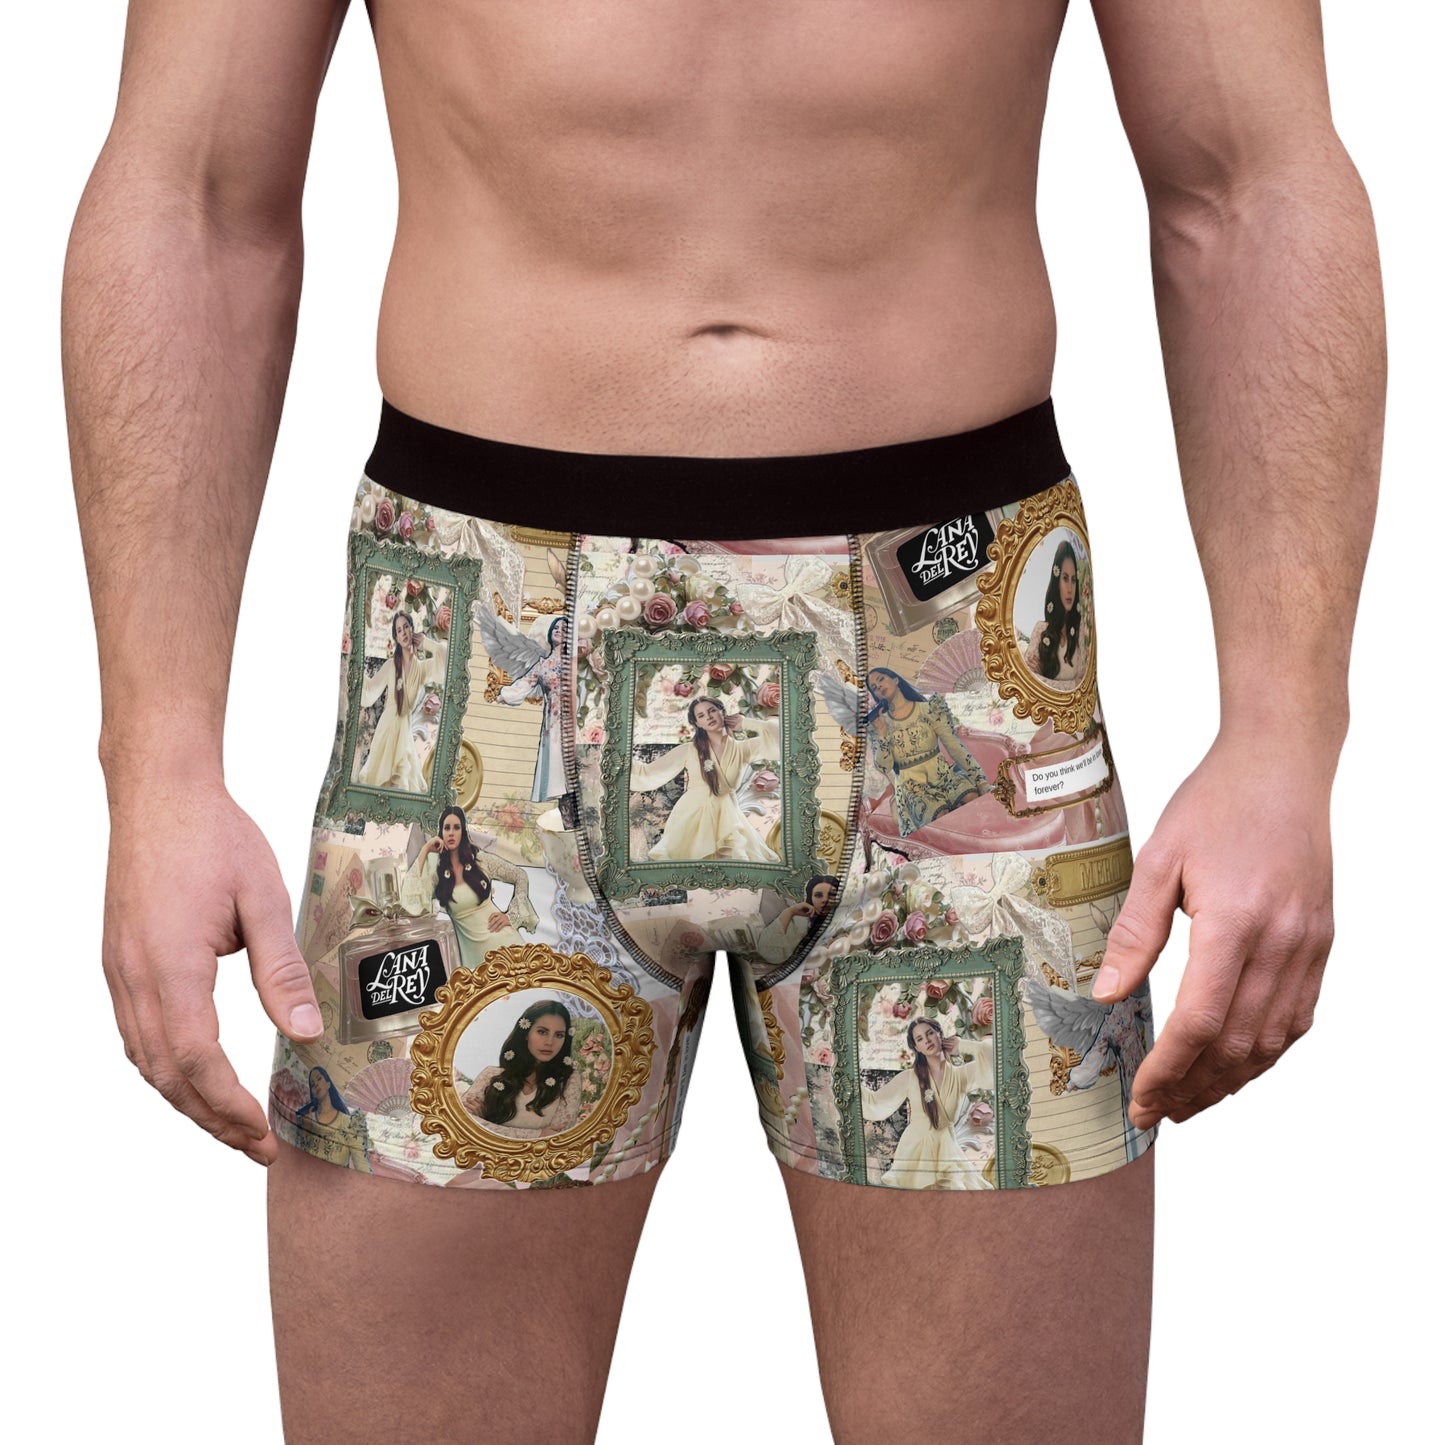 Lana Del Rey Victorian Collage Men's Boxer Briefs Underwear